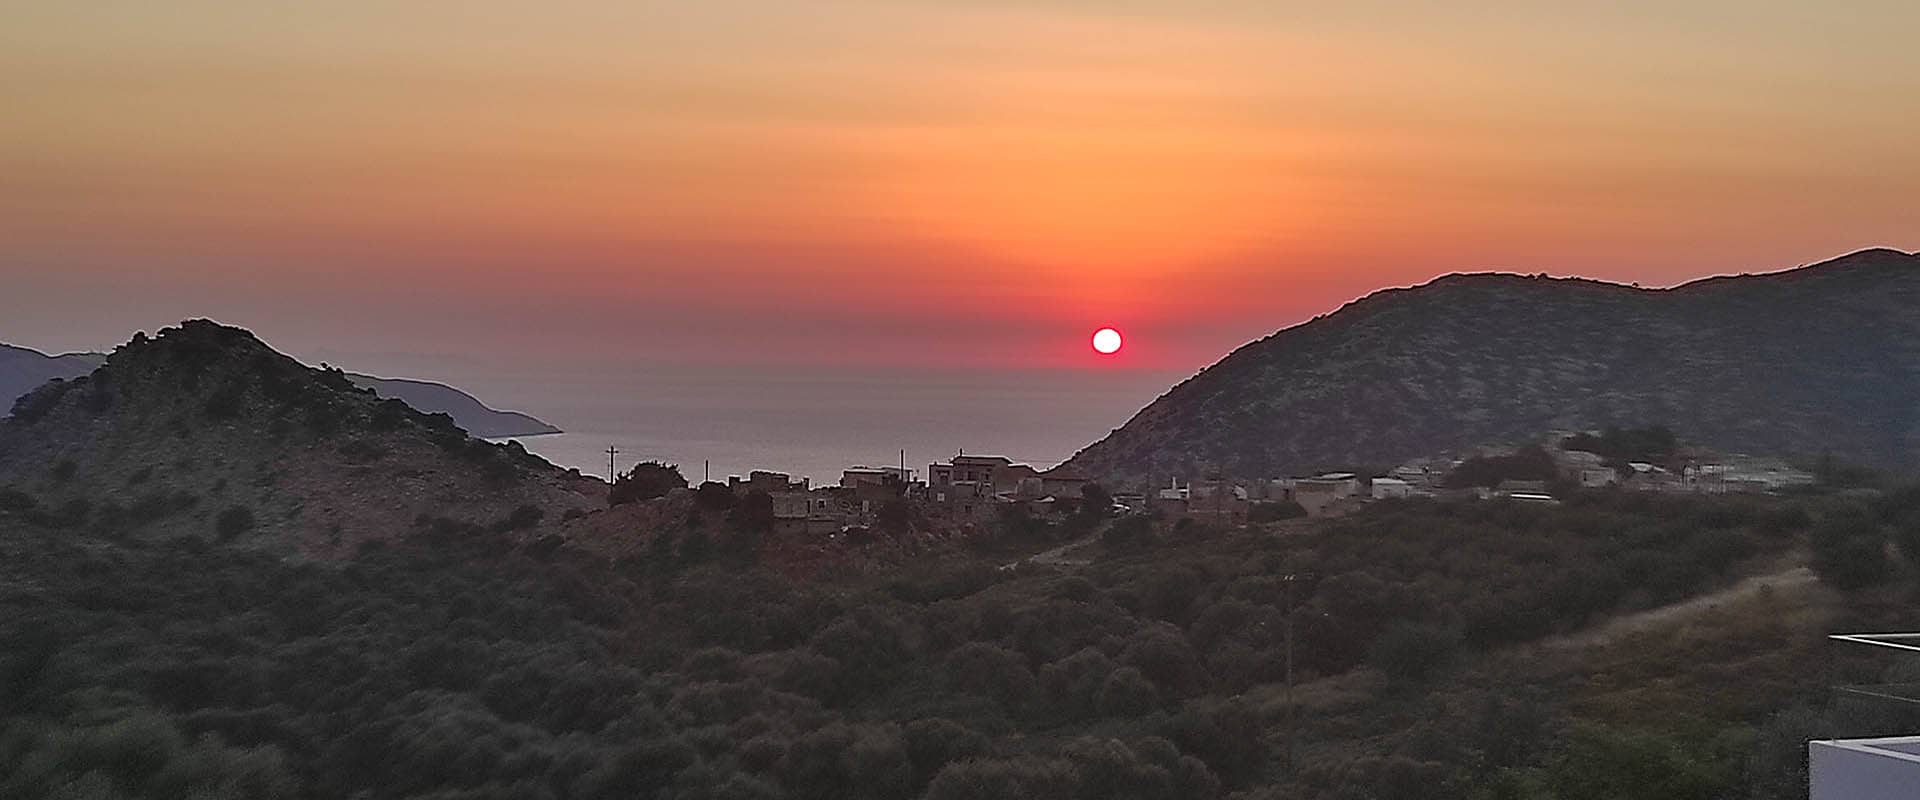 zonsondergang op Kreta Griekenland